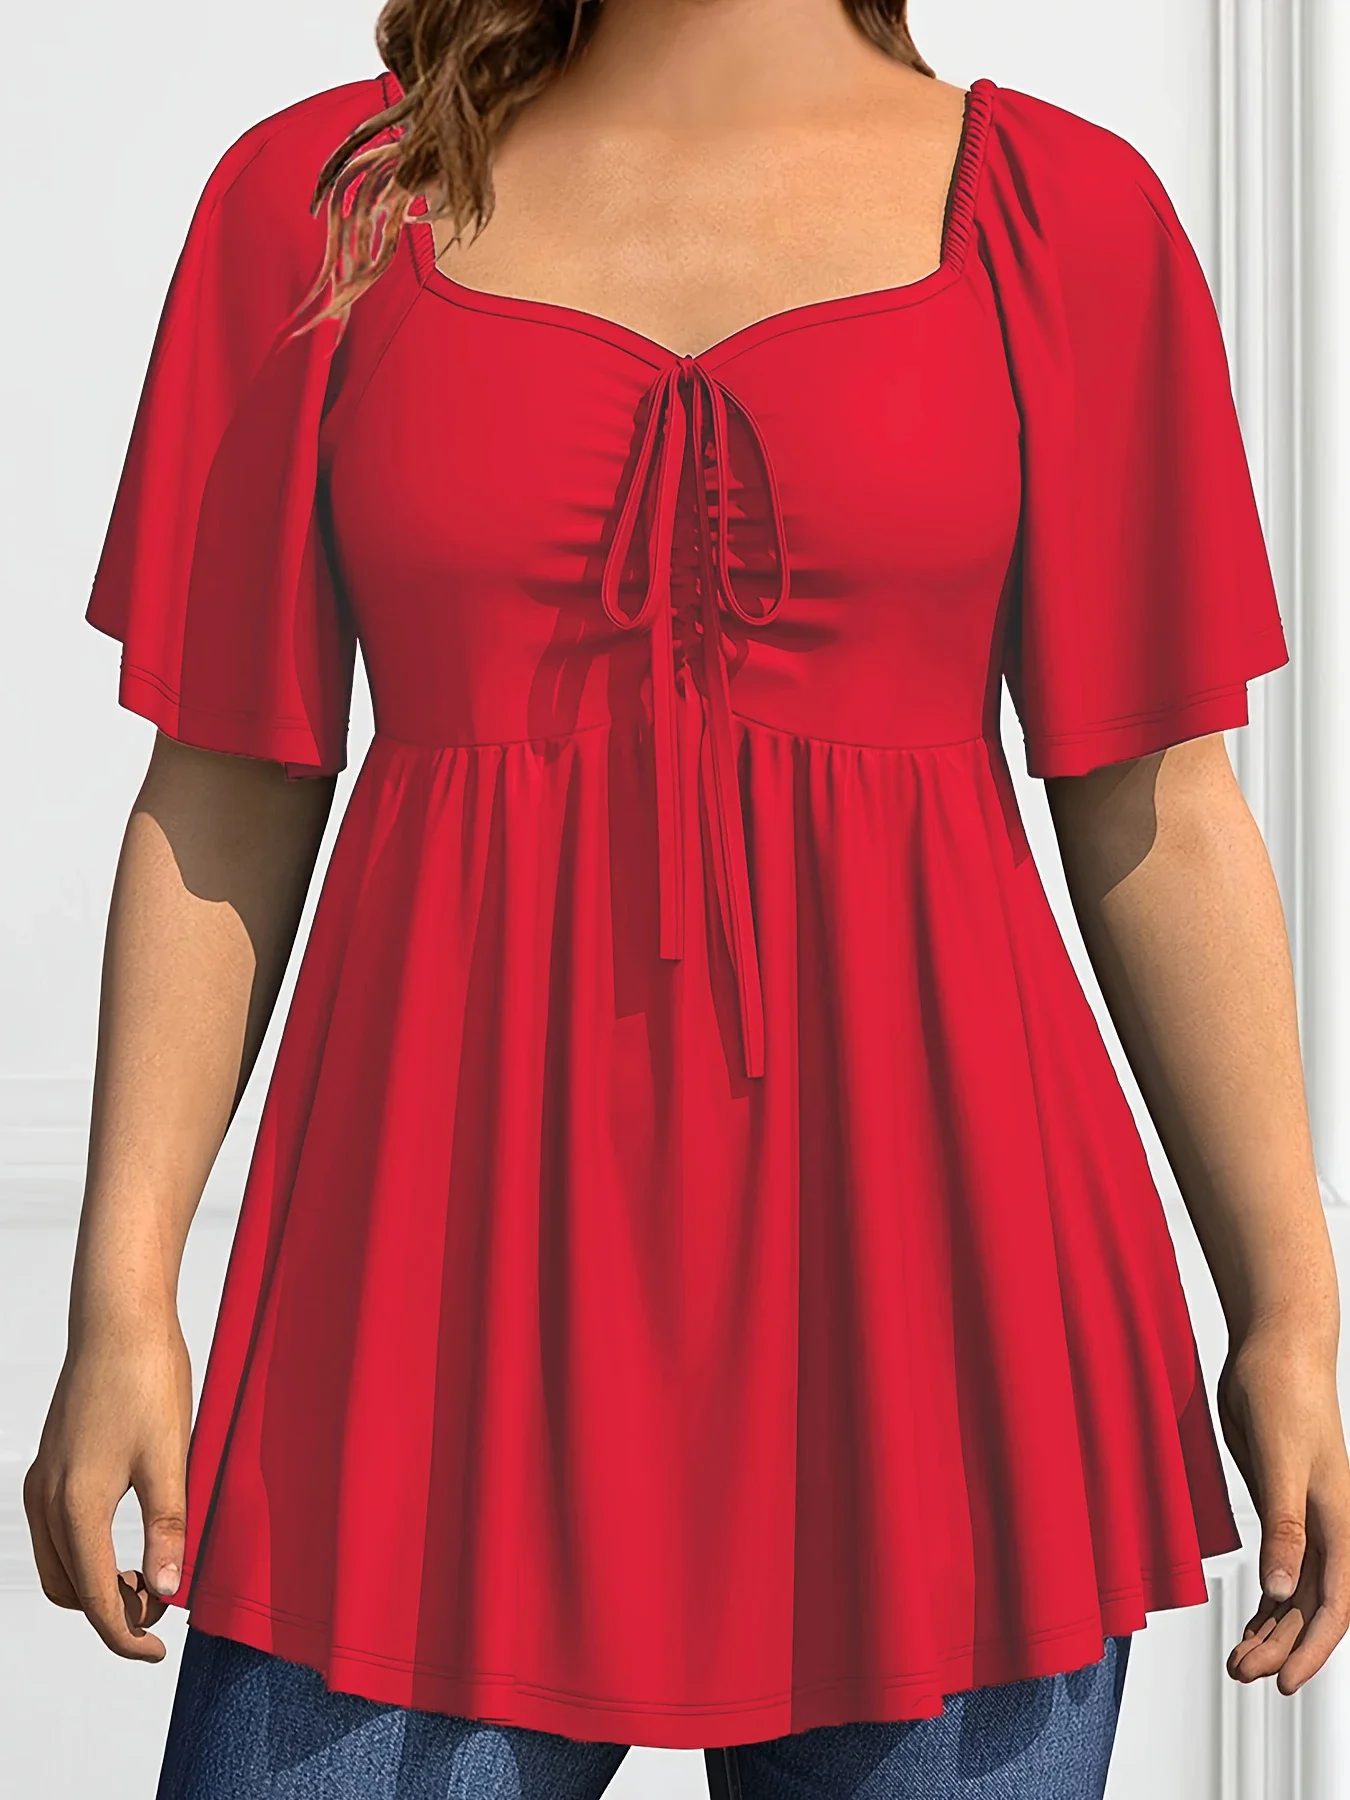 Plus Size Mode eine Linie Frauen Bluse lässig plissiert dekorative Kordel zug quadratischen Kragen T-Shirt elegante Sommer Kurzarm Top